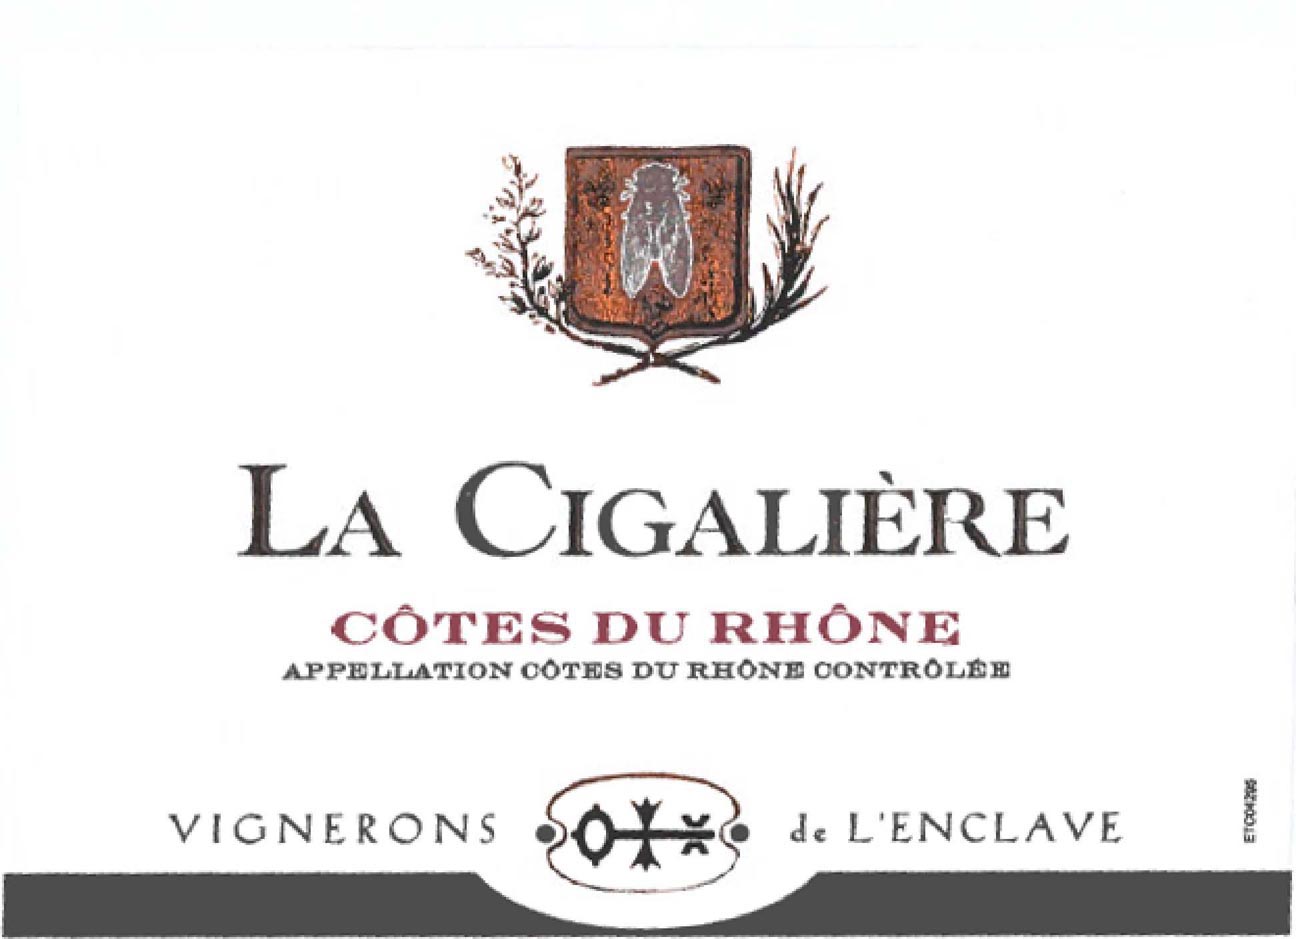 La Cigaliere - Cotes du Rhone label